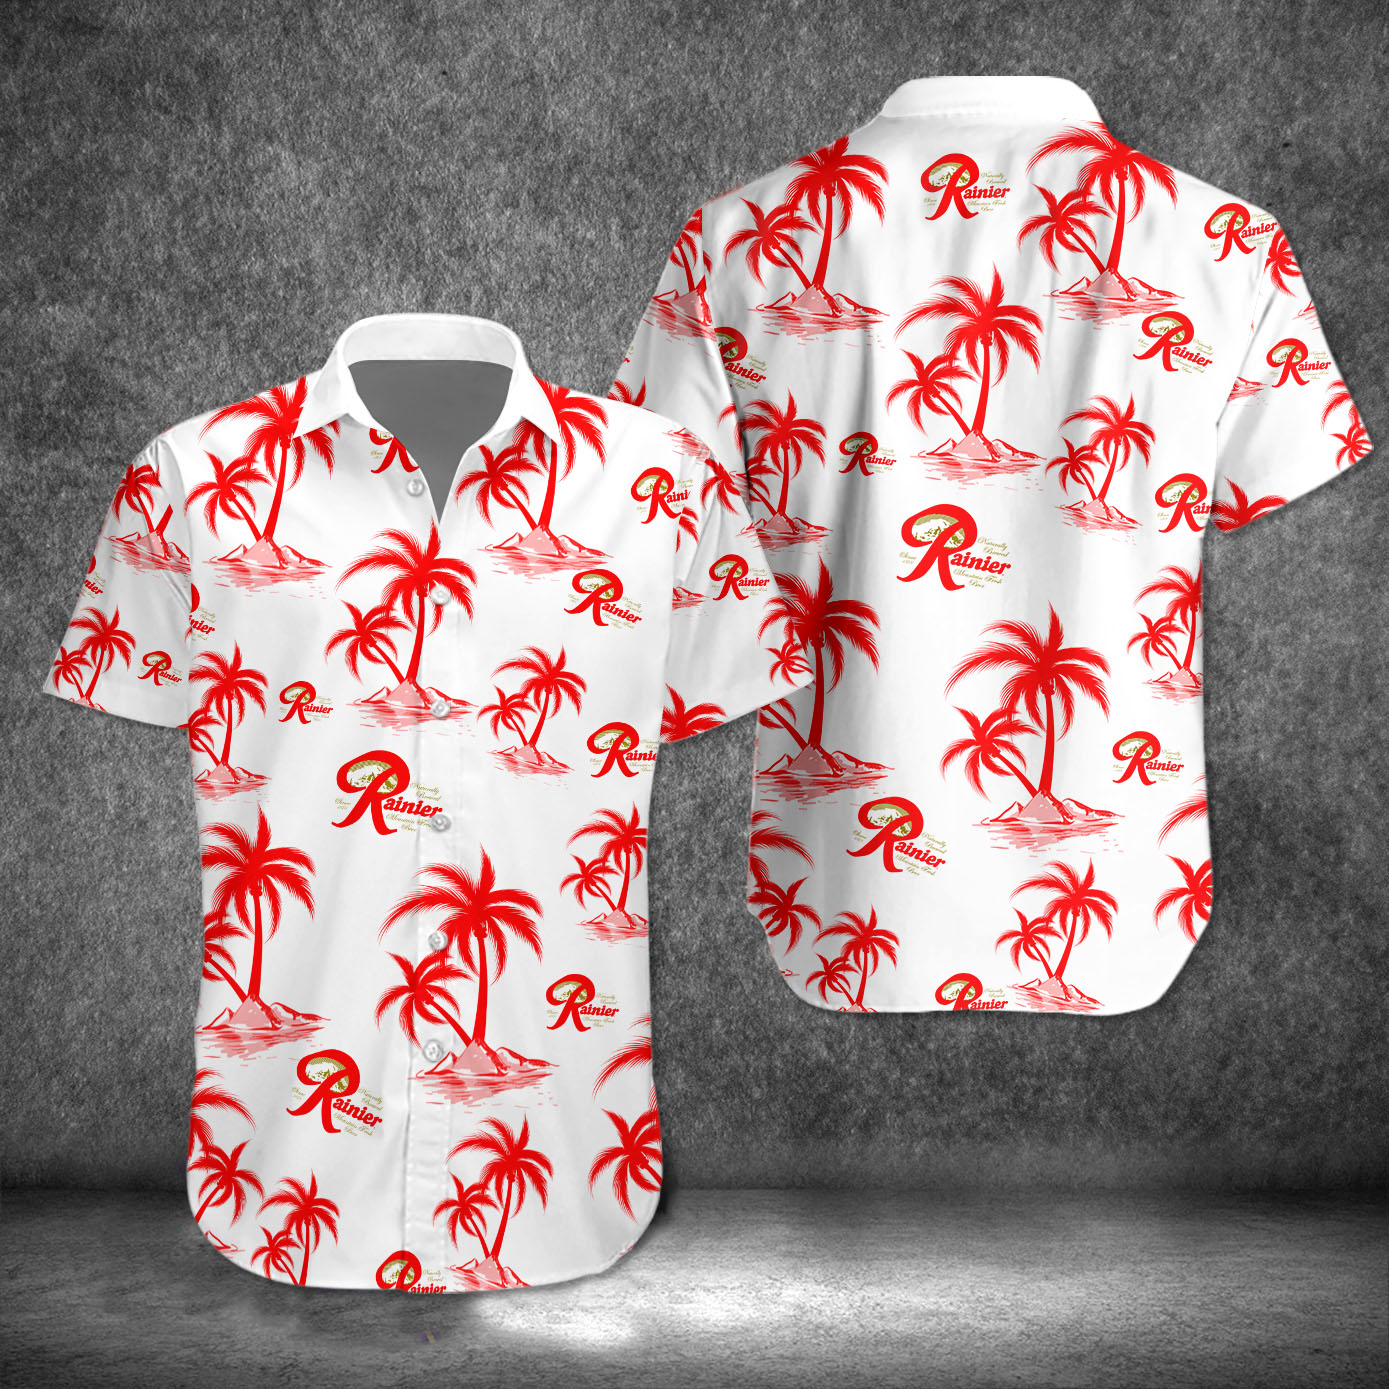 rainier hawaiian shirt 8913 U8iFY